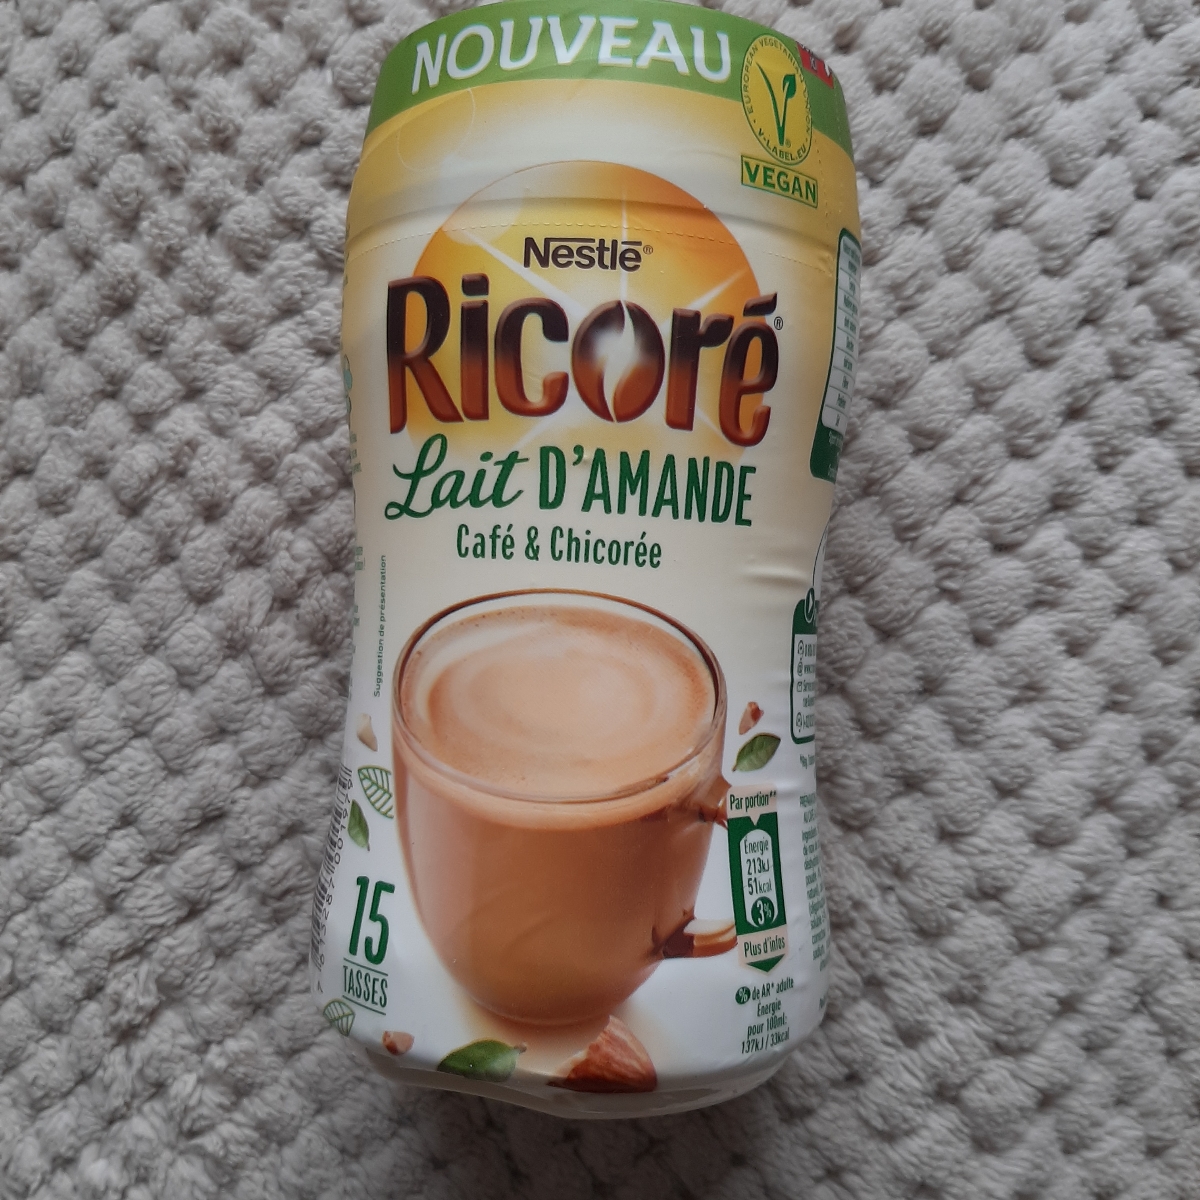 Nestlé Ricoré lait d'amande Reviews